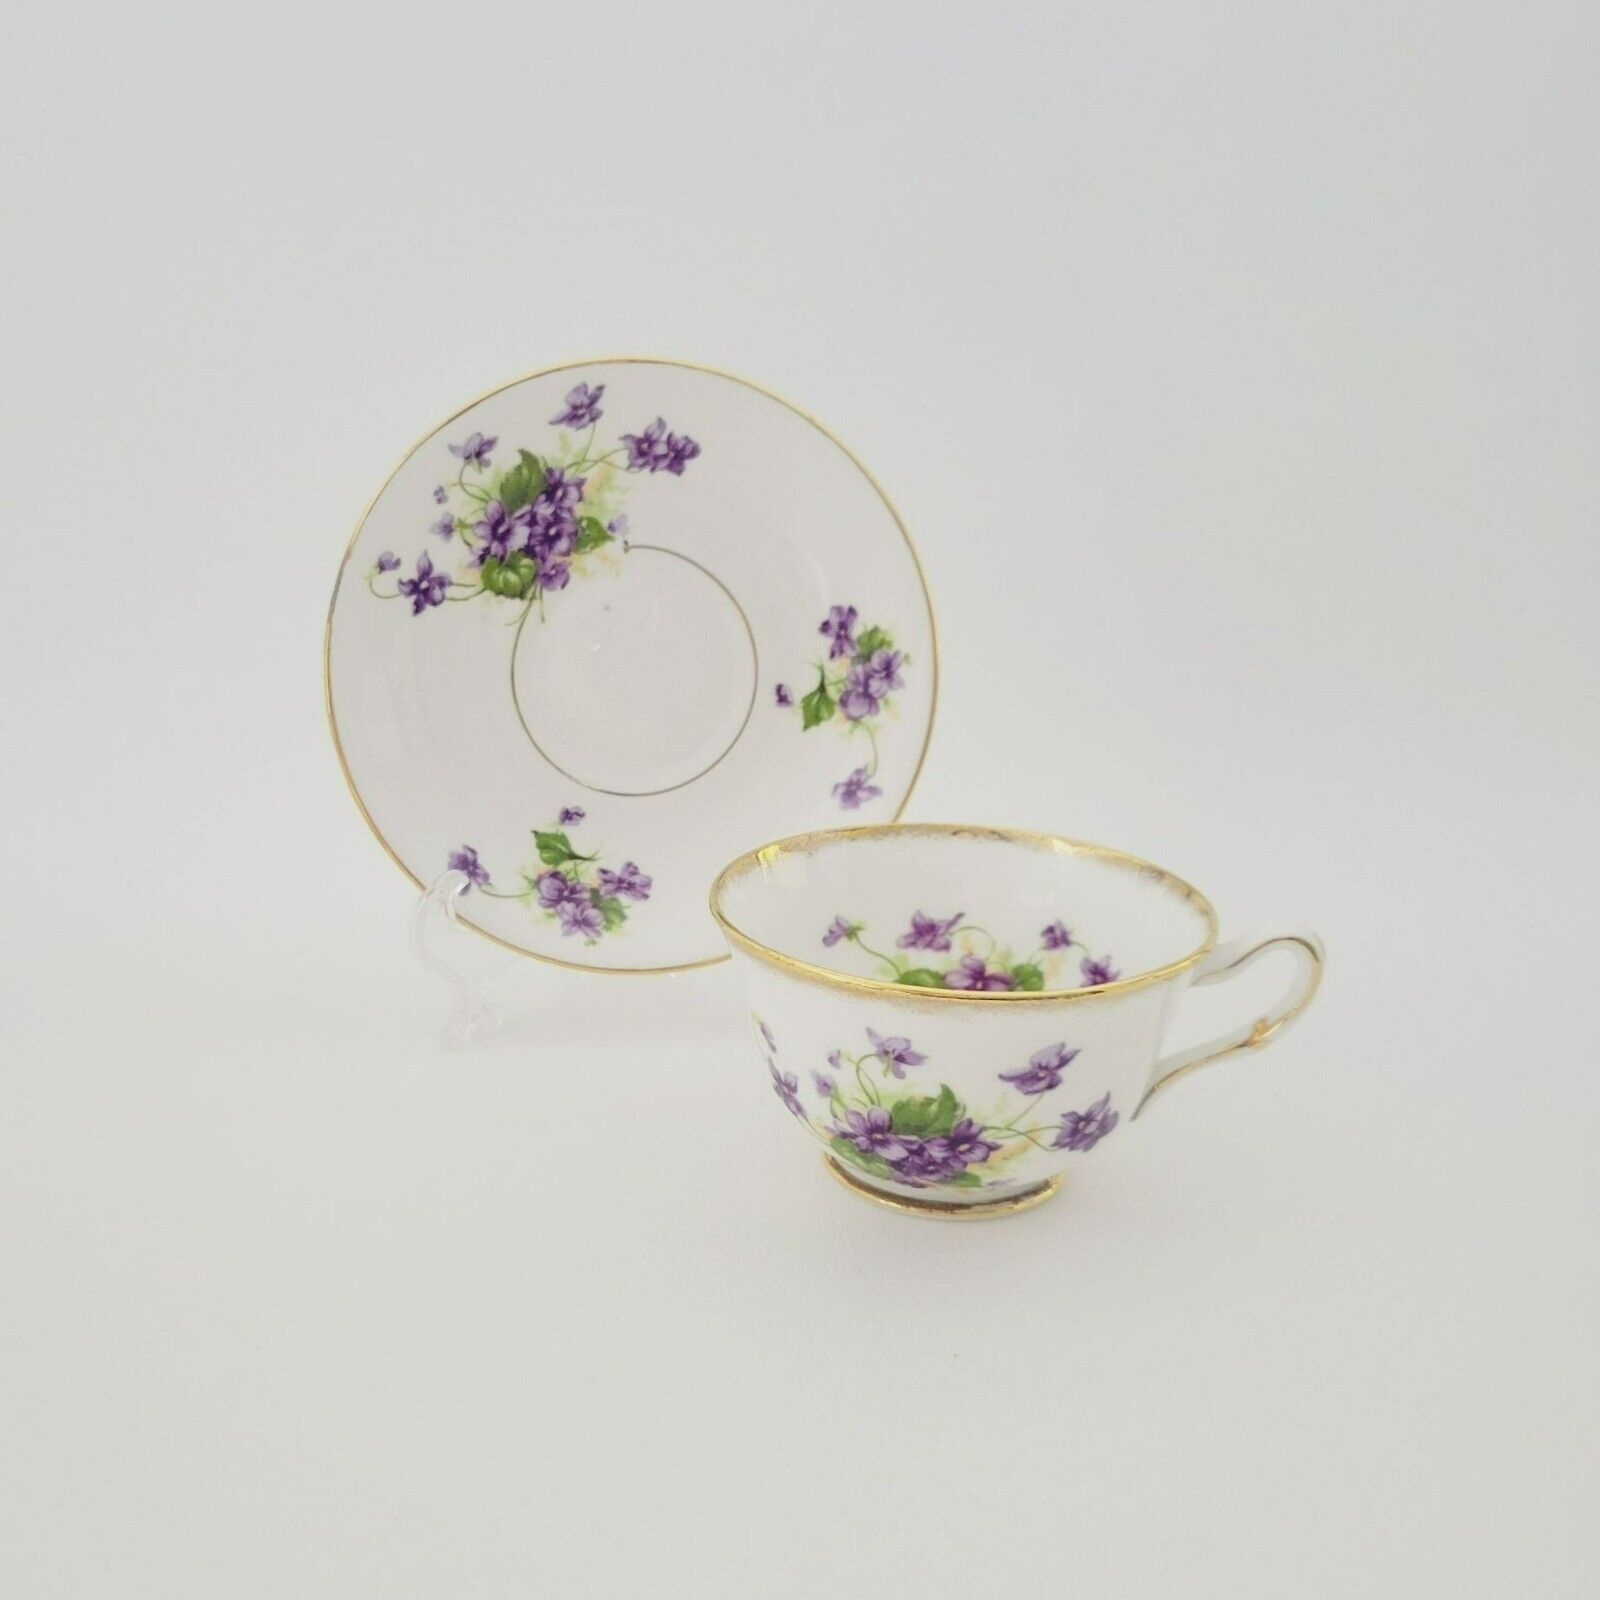 T.F. & S. Phoenix Violets Teacup & Saucer Gold Trim Purple Floral c1950s England